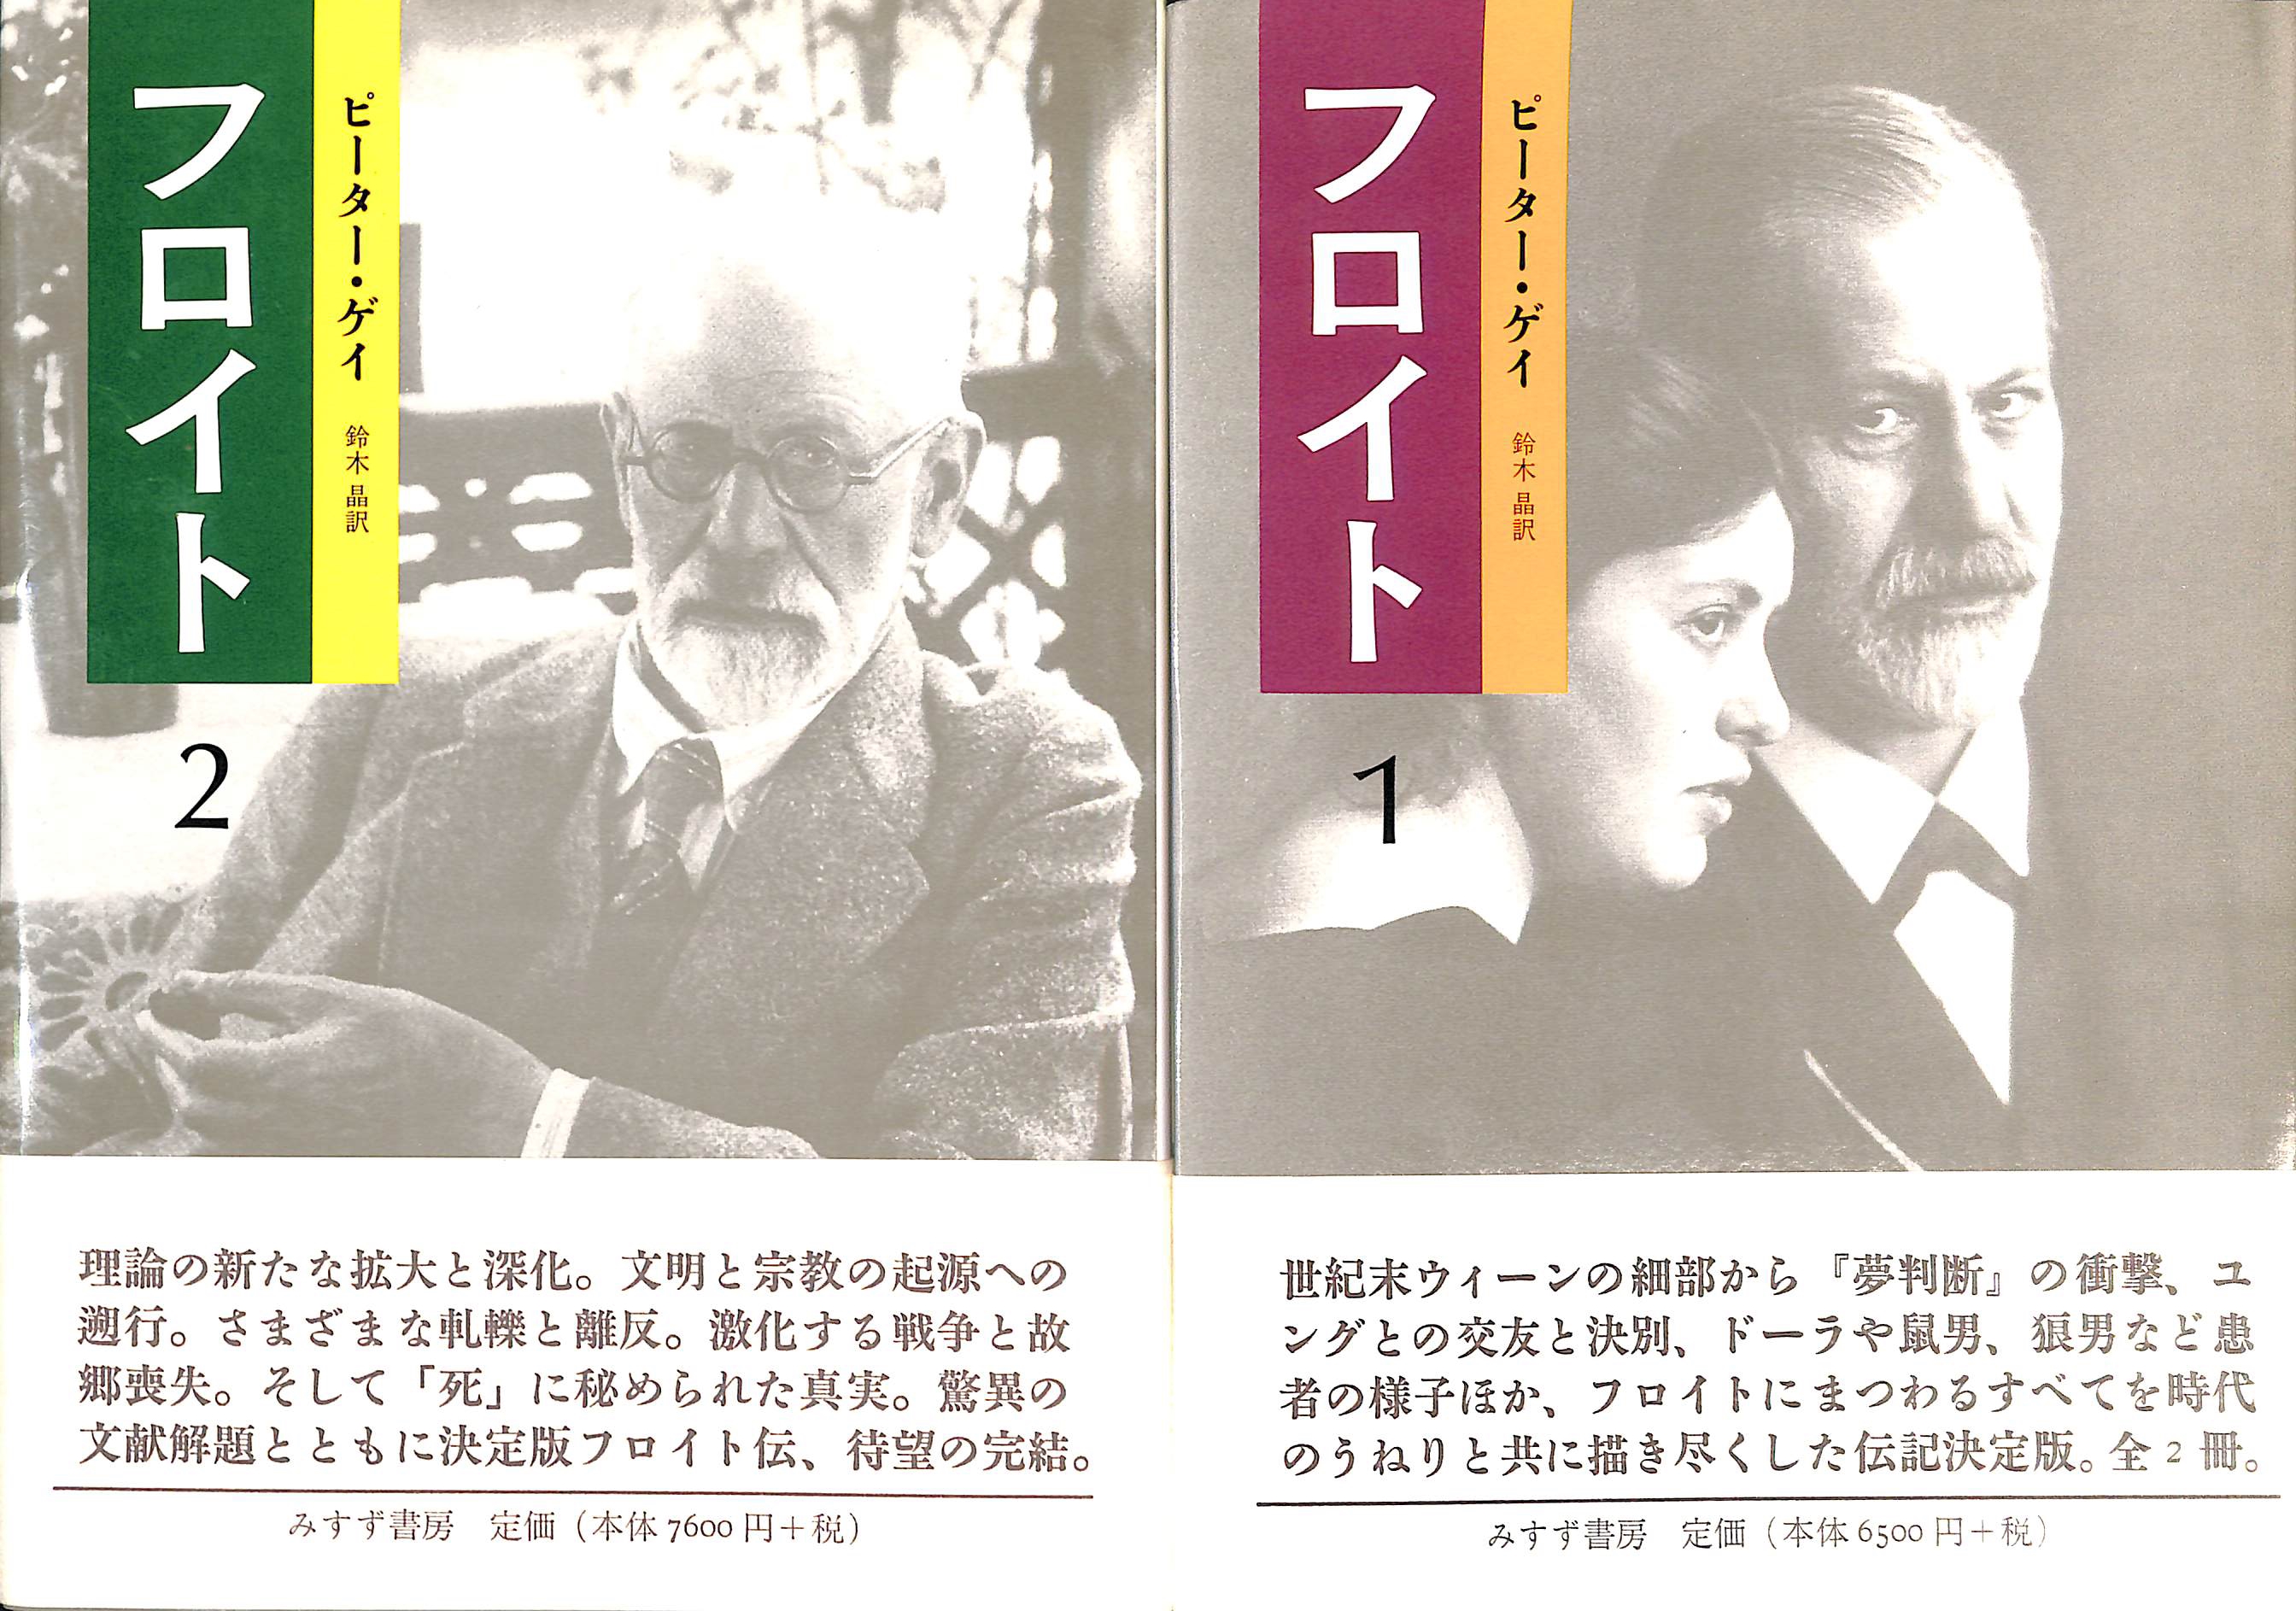 フロイト 全2巻揃 ピーター・ゲイ 鈴木晶訳 | 古本よみた屋 おじいさんの本、買います。